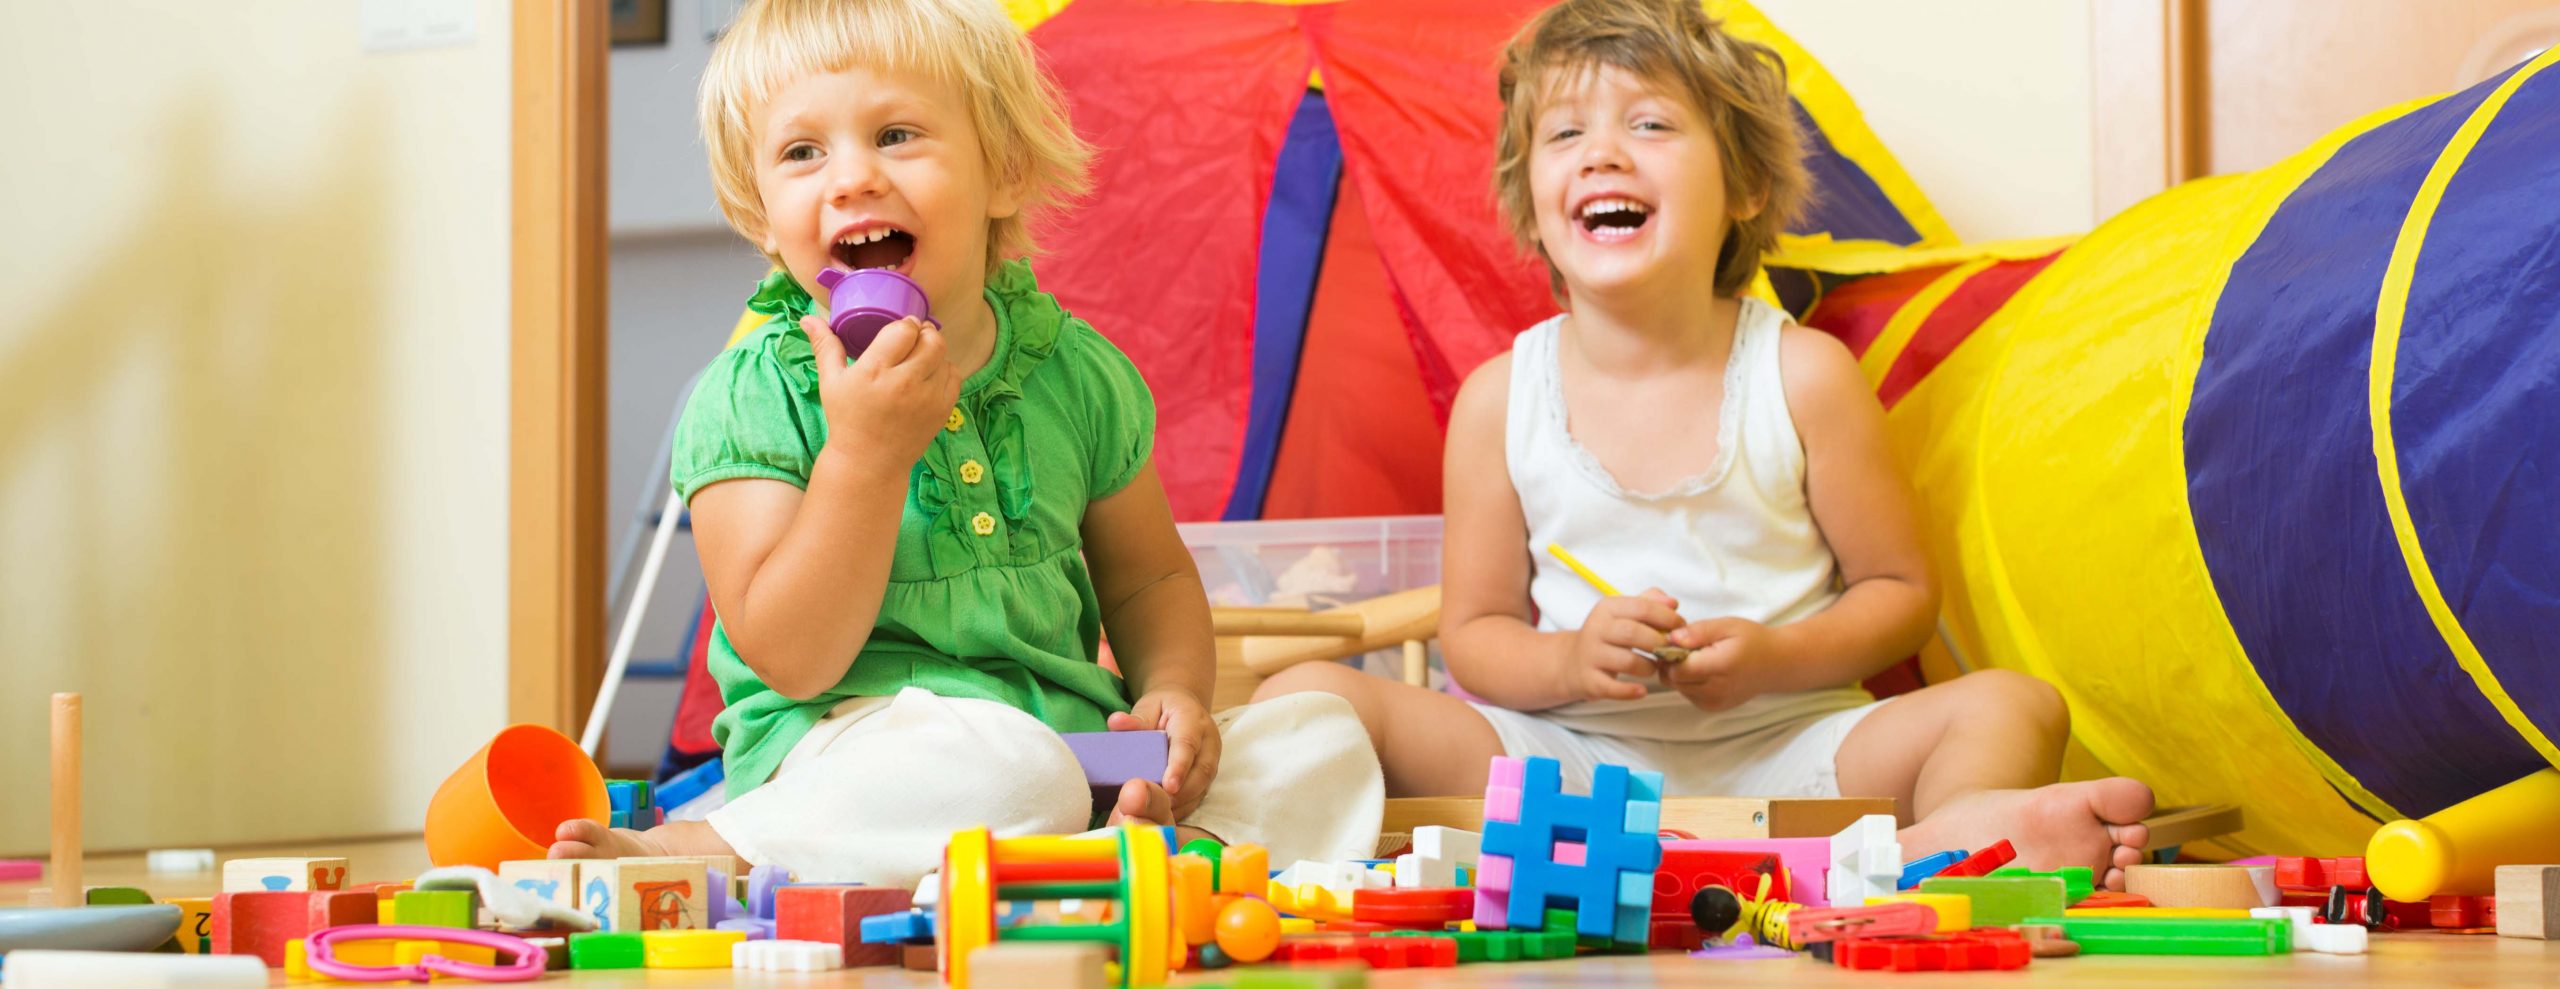 خرید اسباب بازی برای کودک اتیسم